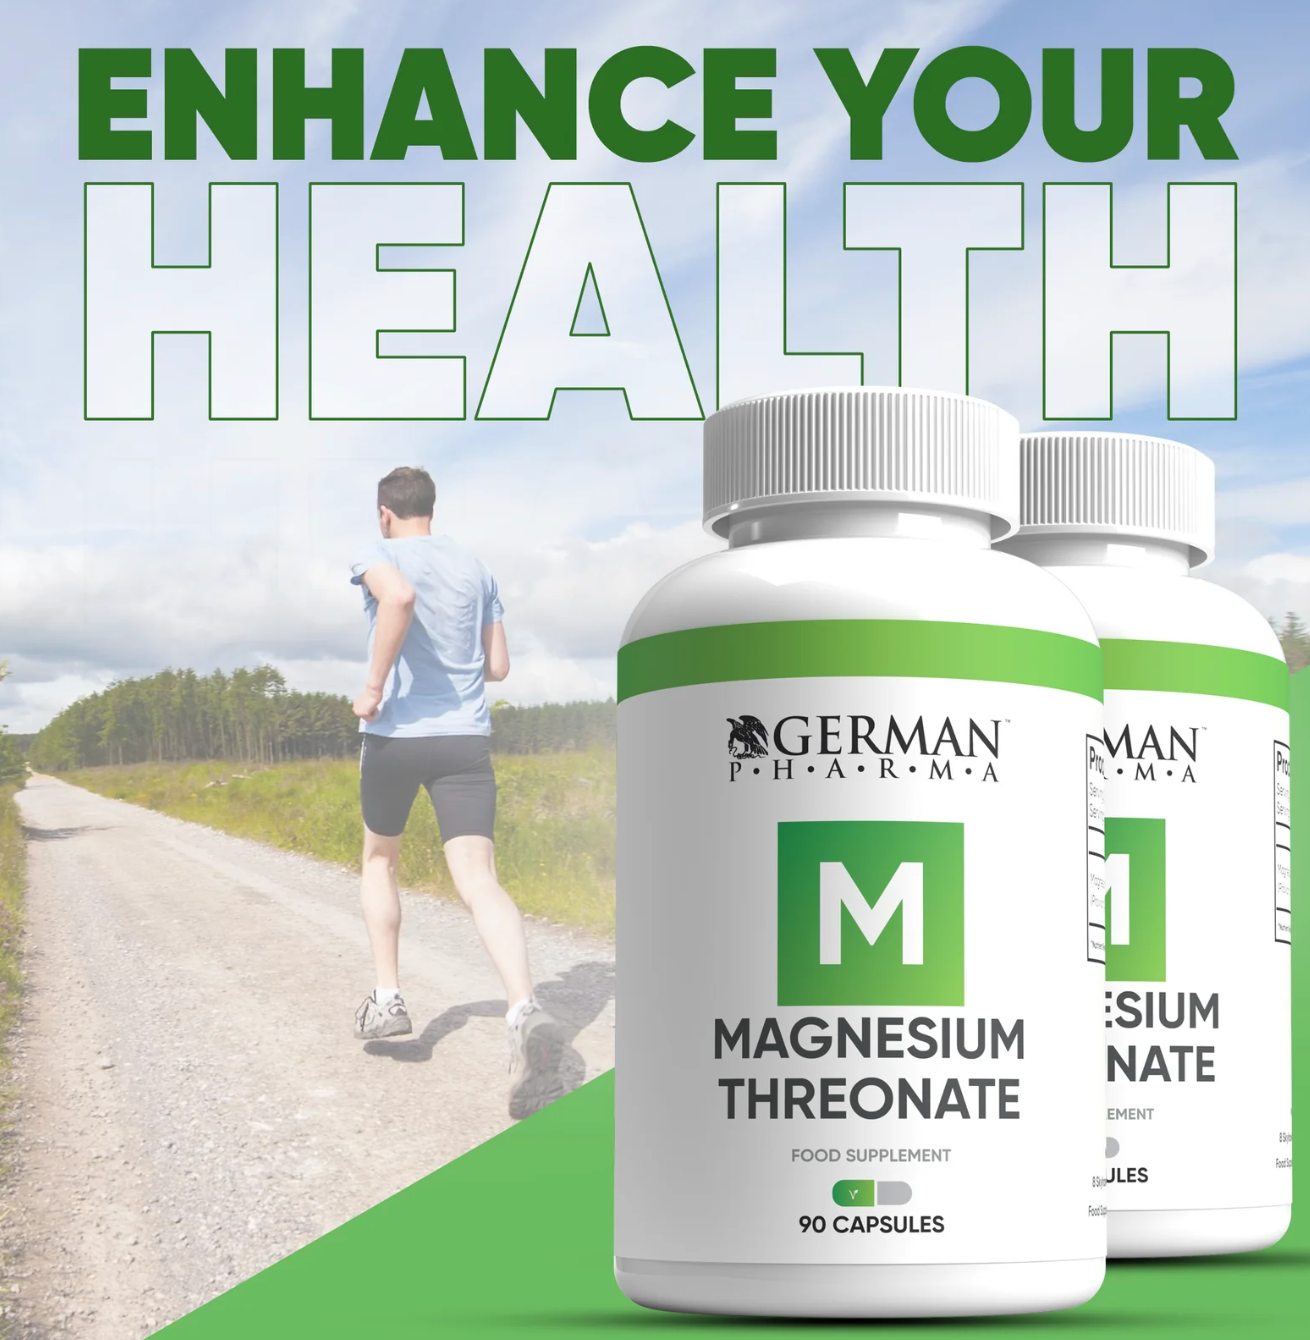 German Pharma Magnesium Threonate